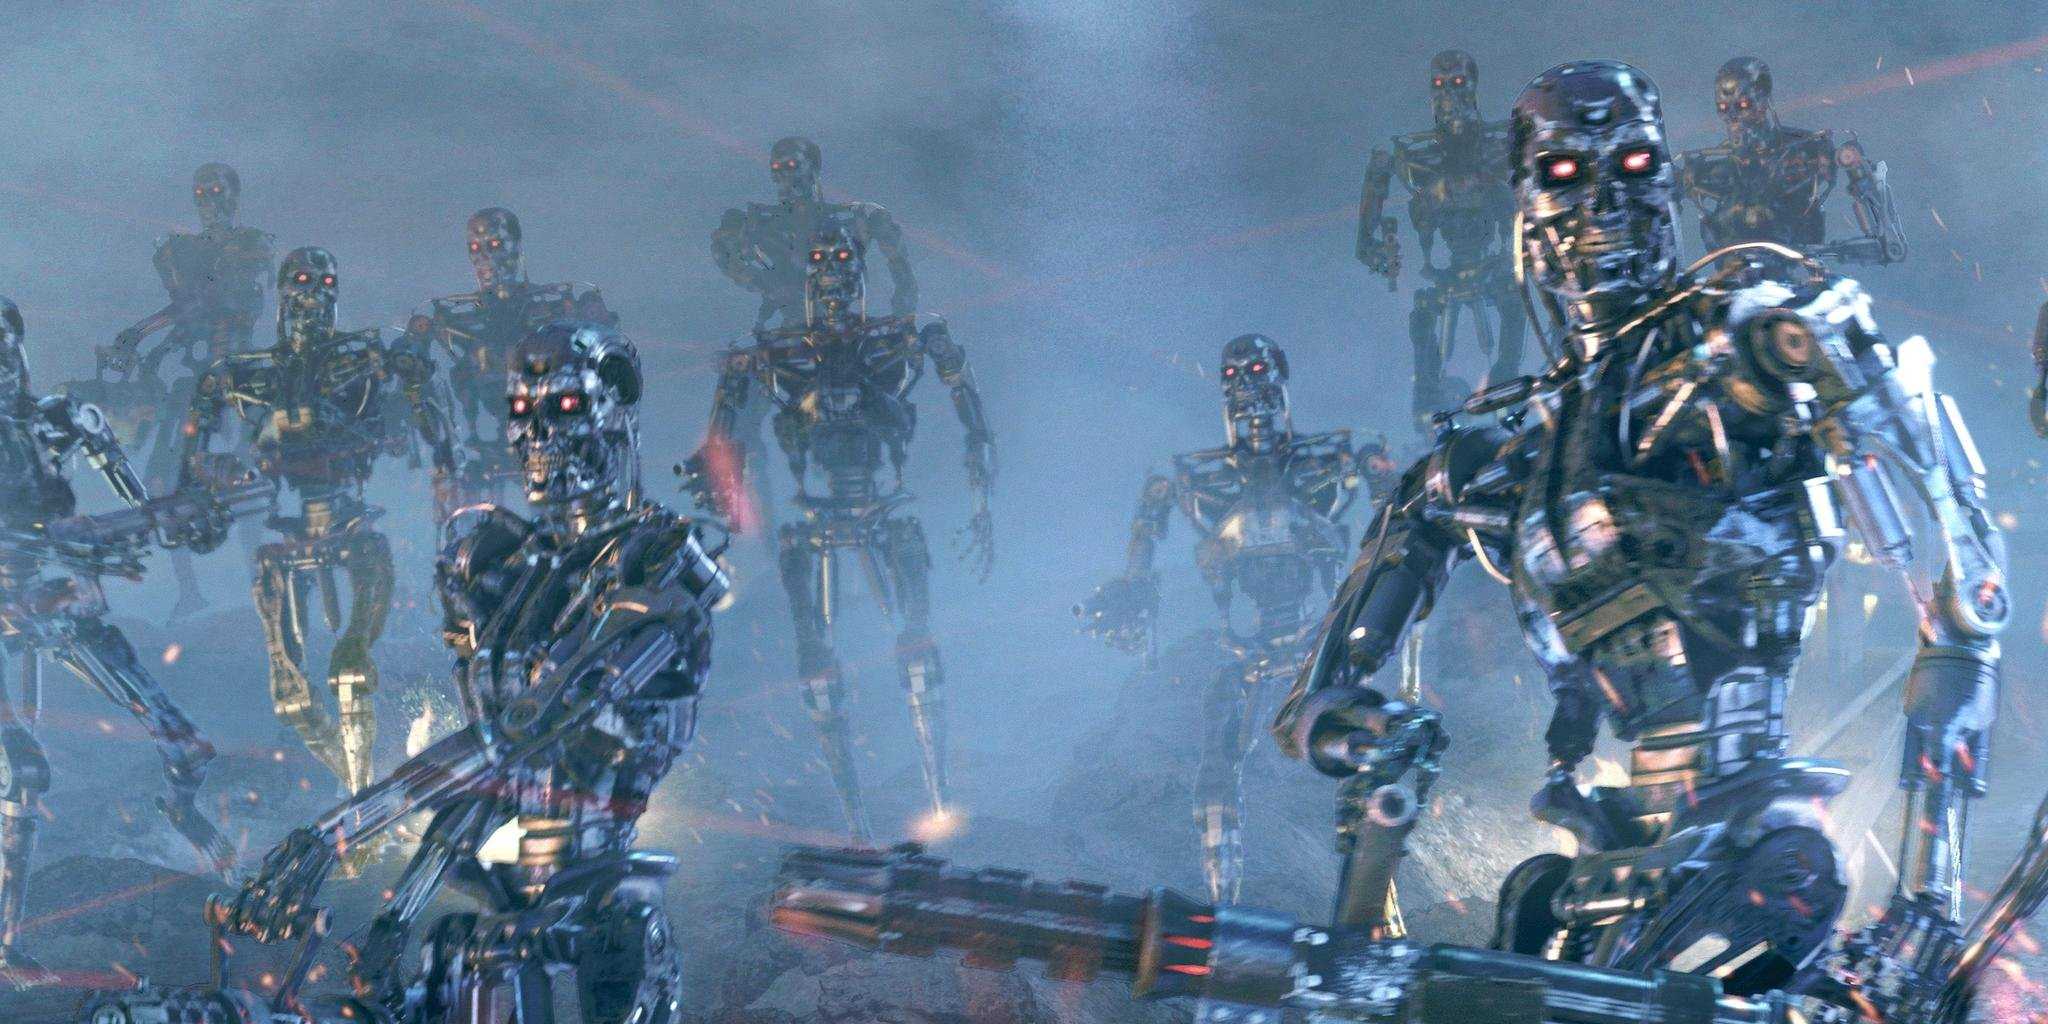 Η DARPA δημιούργησε το πρώτο ρομπότ με αυτοσυνείδηση για πολεμικούς σκοπούς: Κίνδυνος για την Ανθρωπότητα